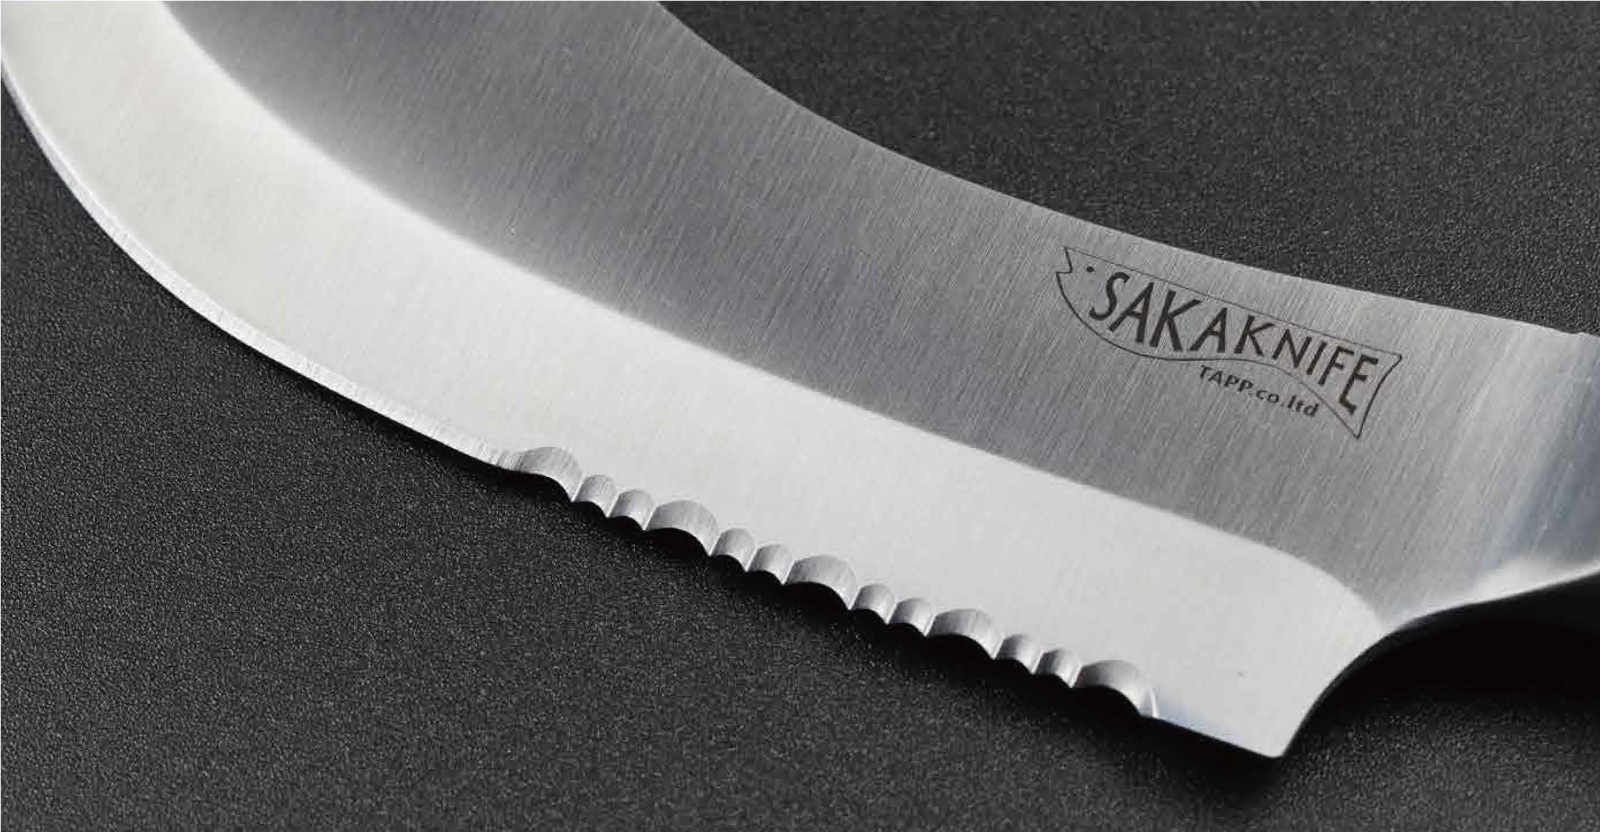 サカナイフ for kitchen – SAKAKNIFE（サカナイフ）公式サイト